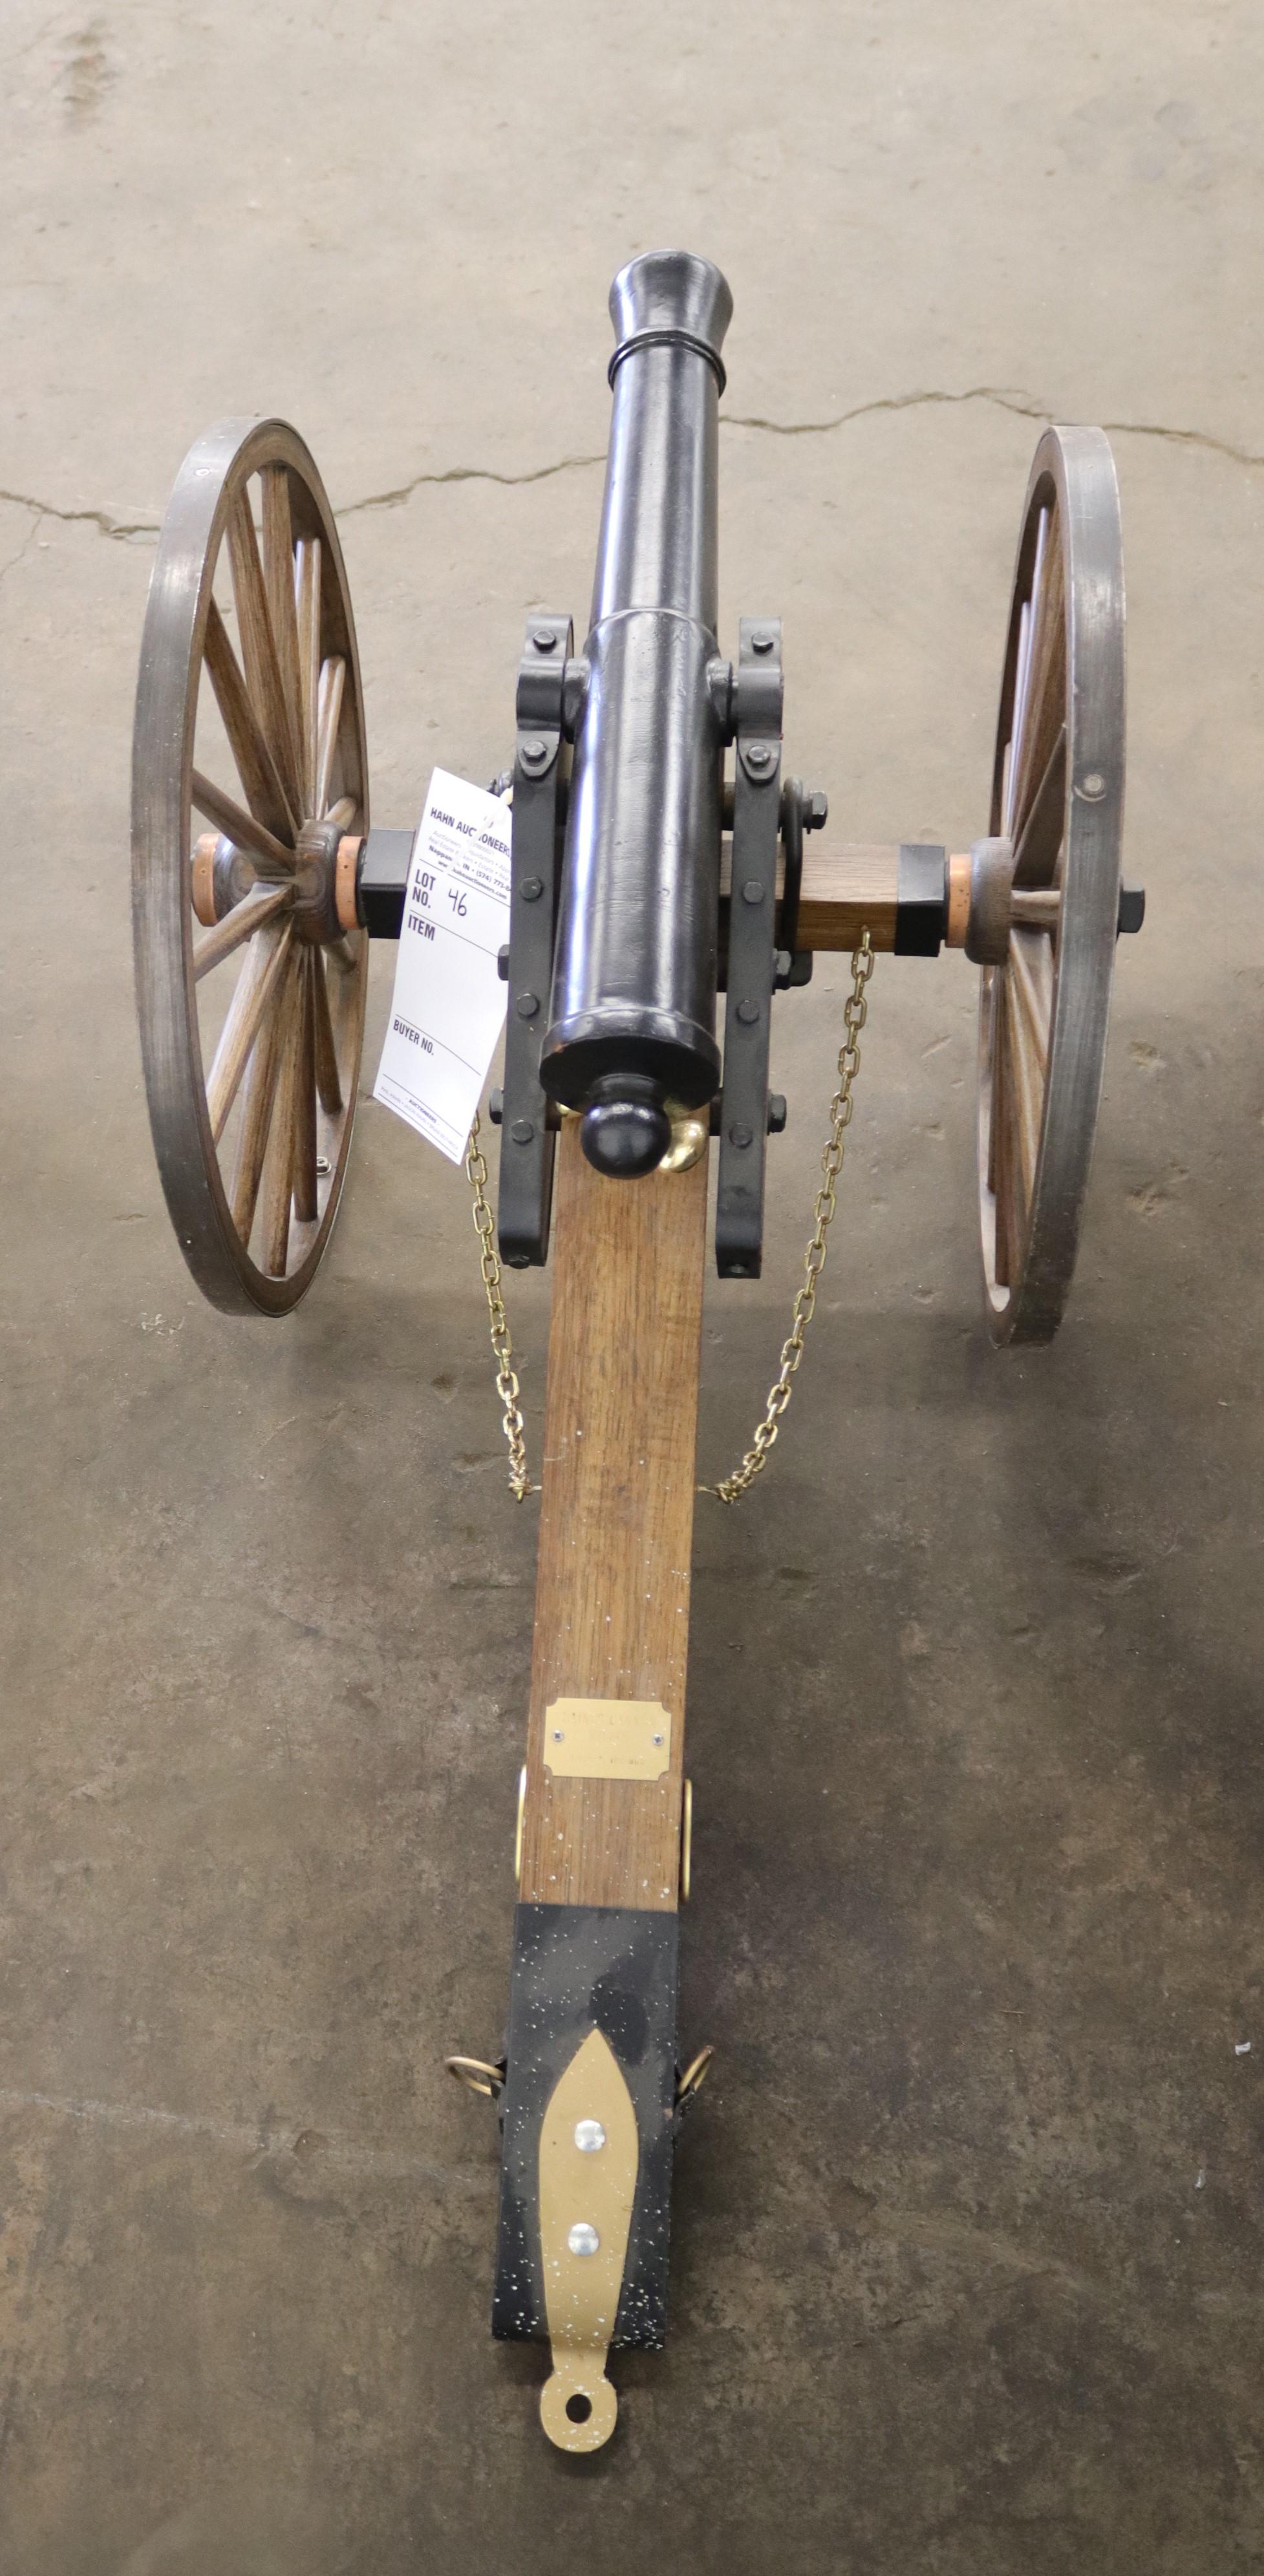 Replica Cannon